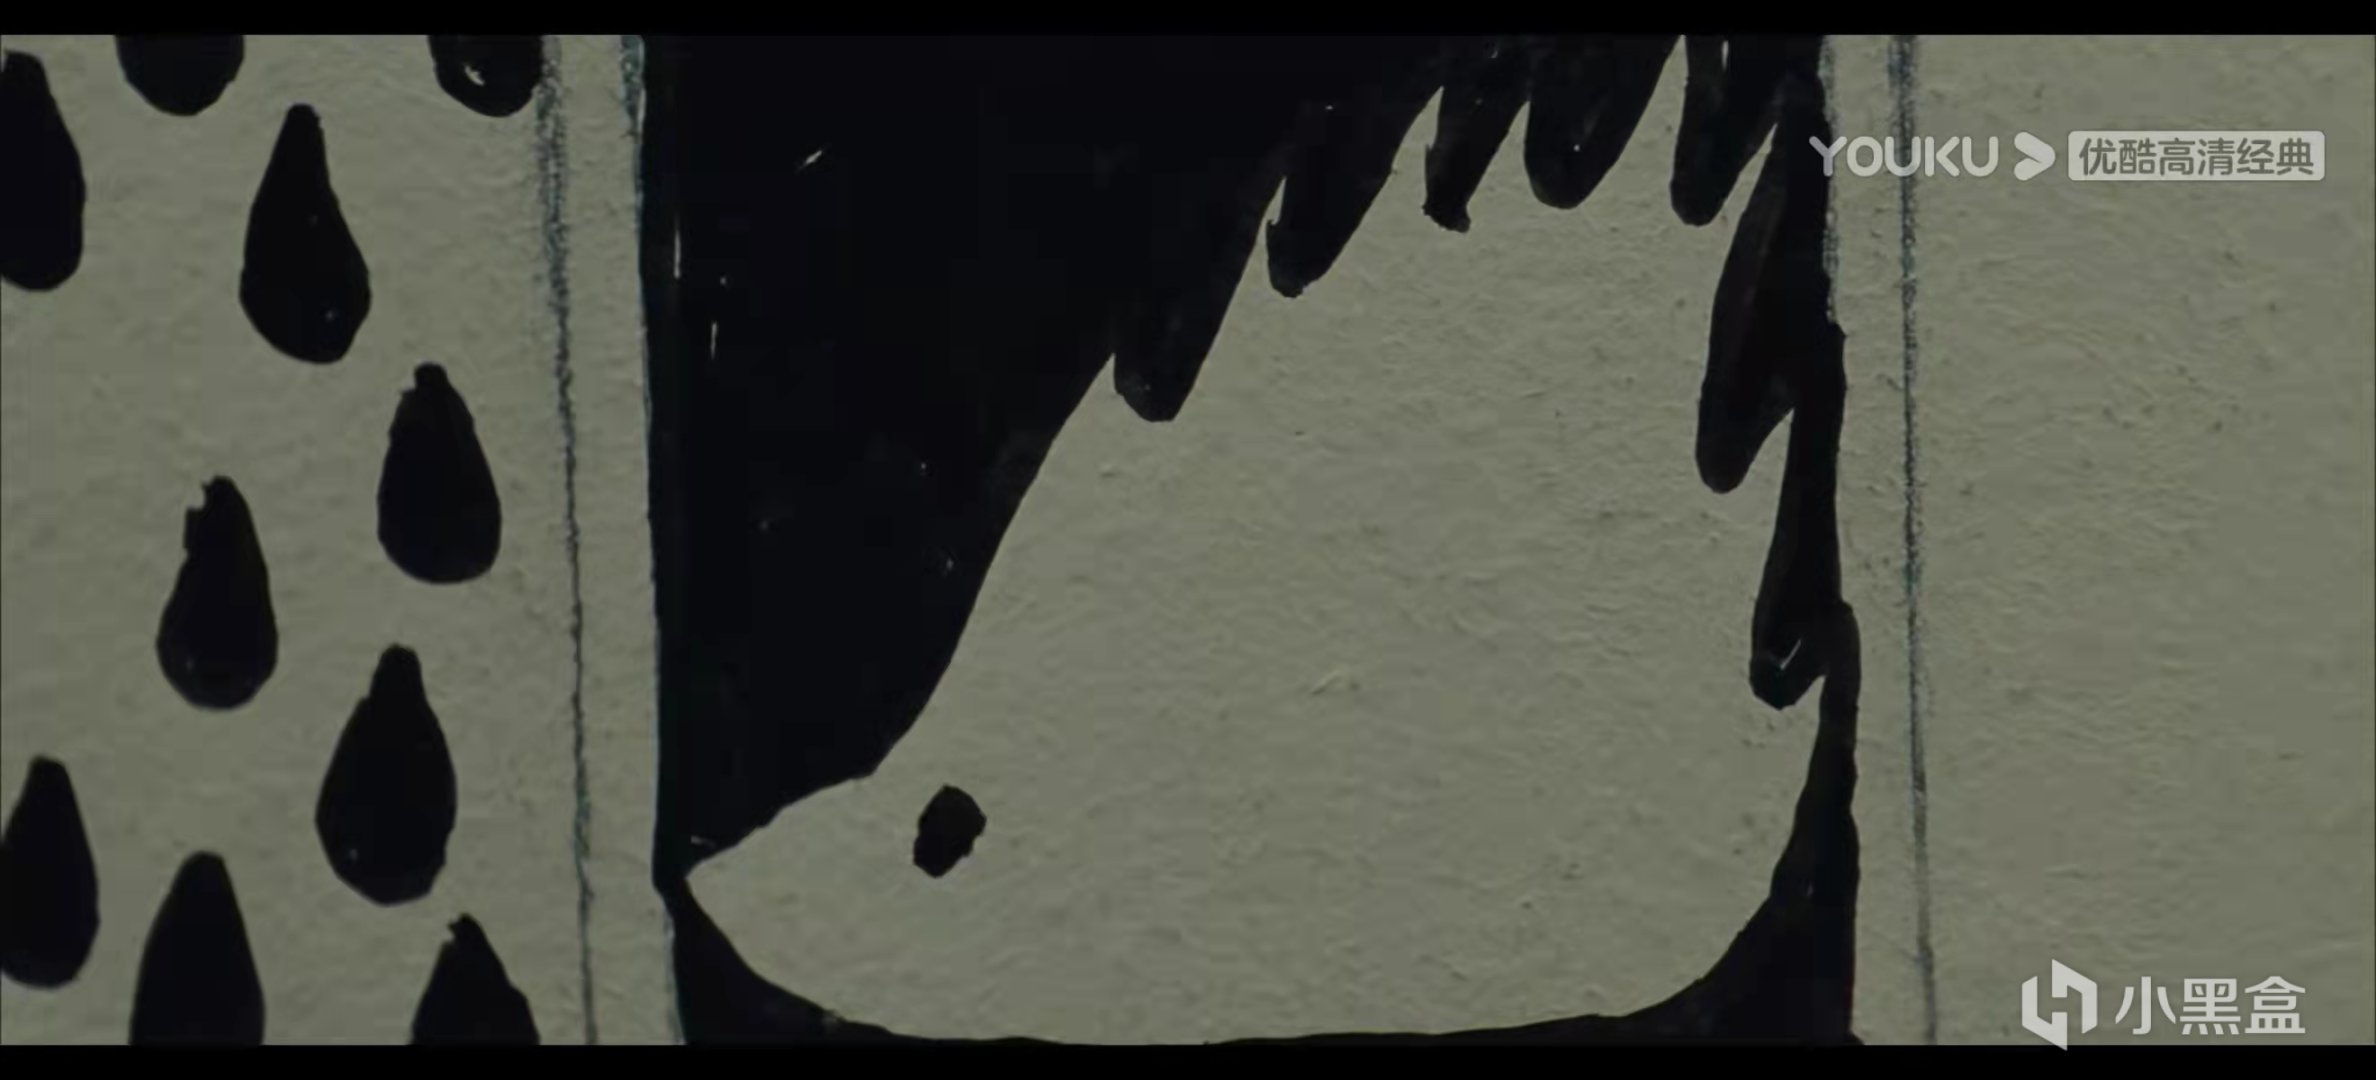 【影視動漫】刺蝟少女的死亡倒計時計劃——電影《刺蝟的優雅》中的帕洛瑪視角-第39張